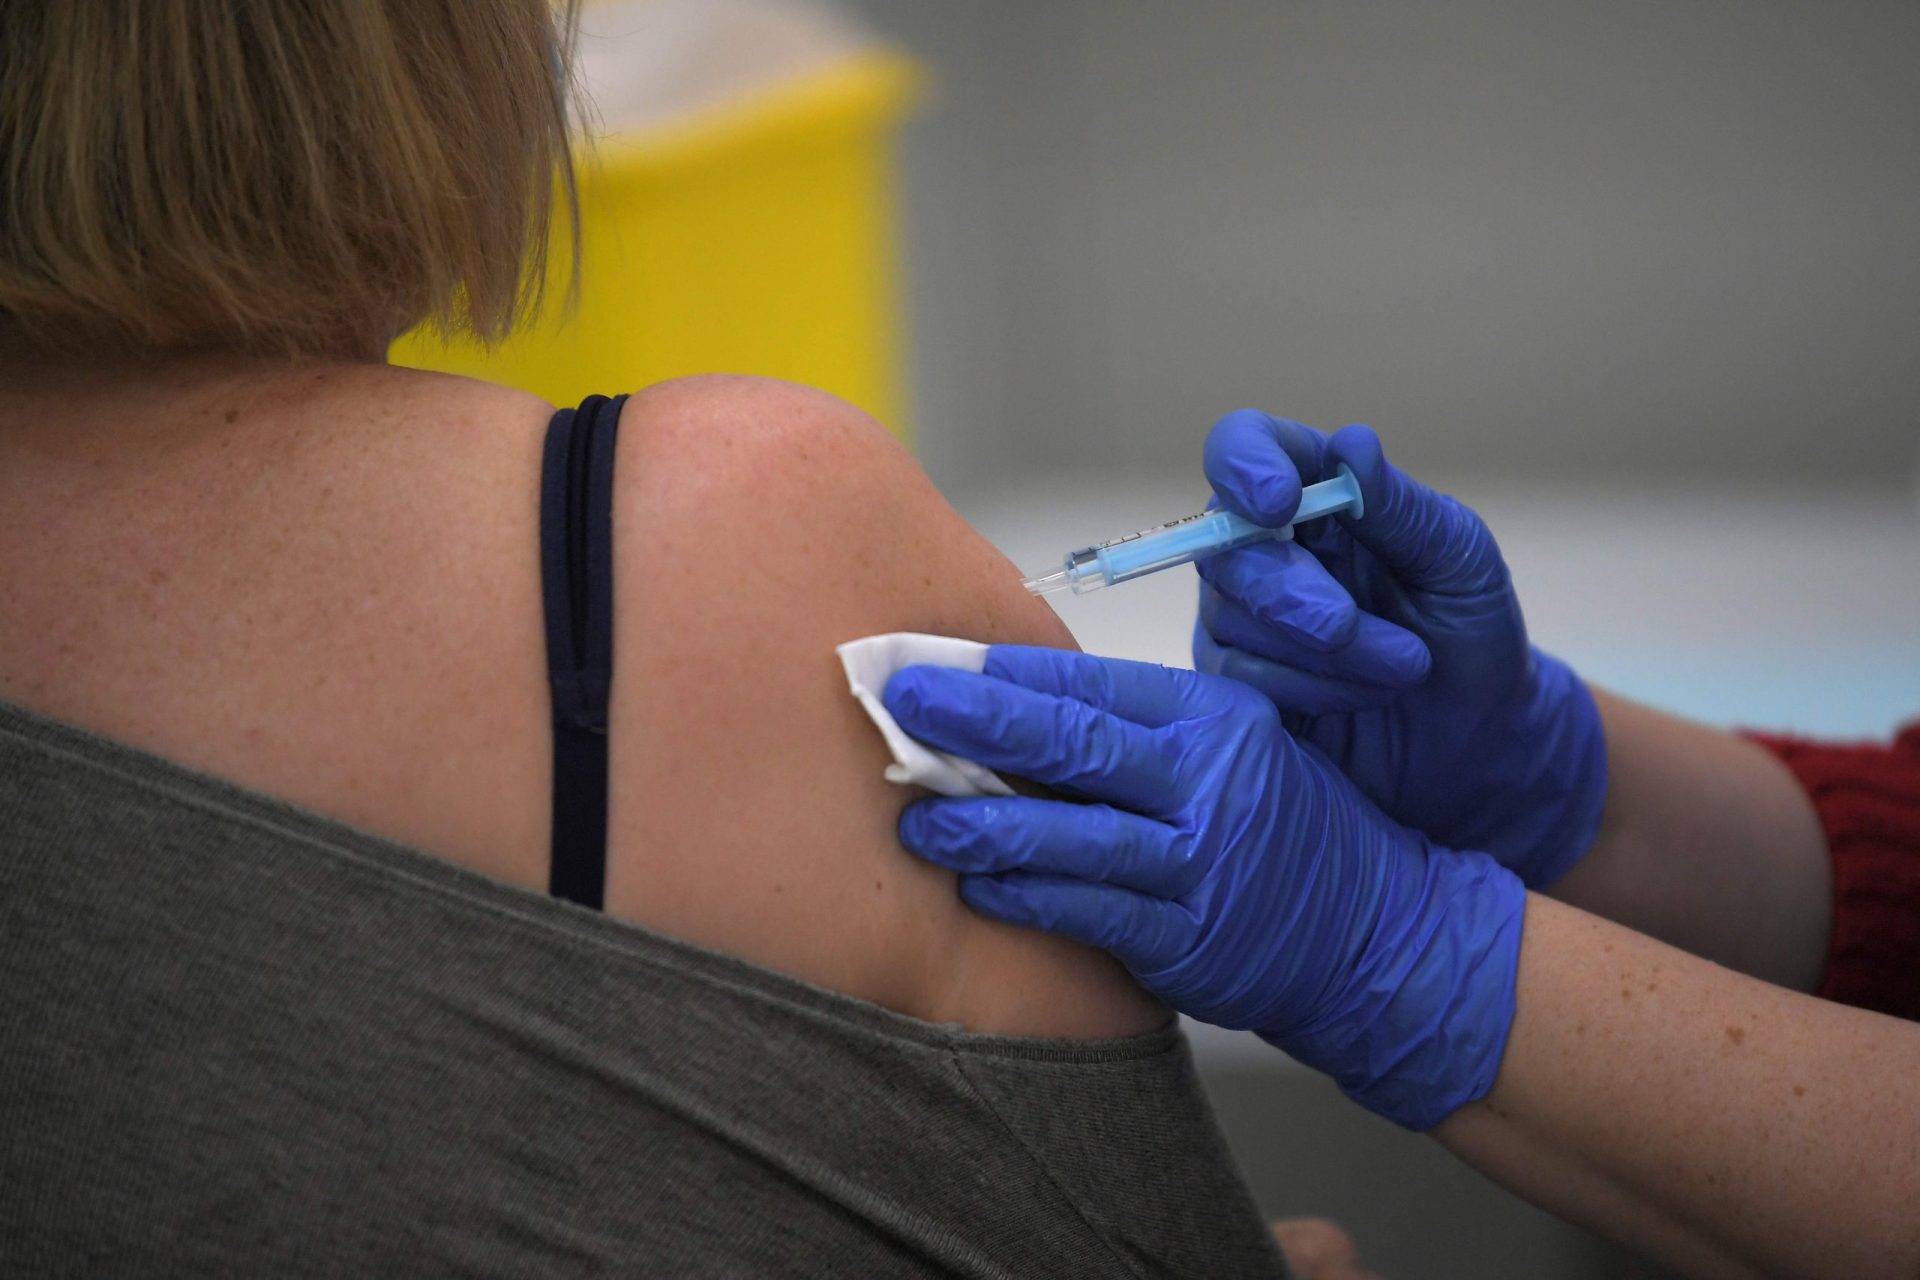 Jovens entre os 18 e 29 anos começam a ser receber vacina contra a covid-19 a partir de hoje